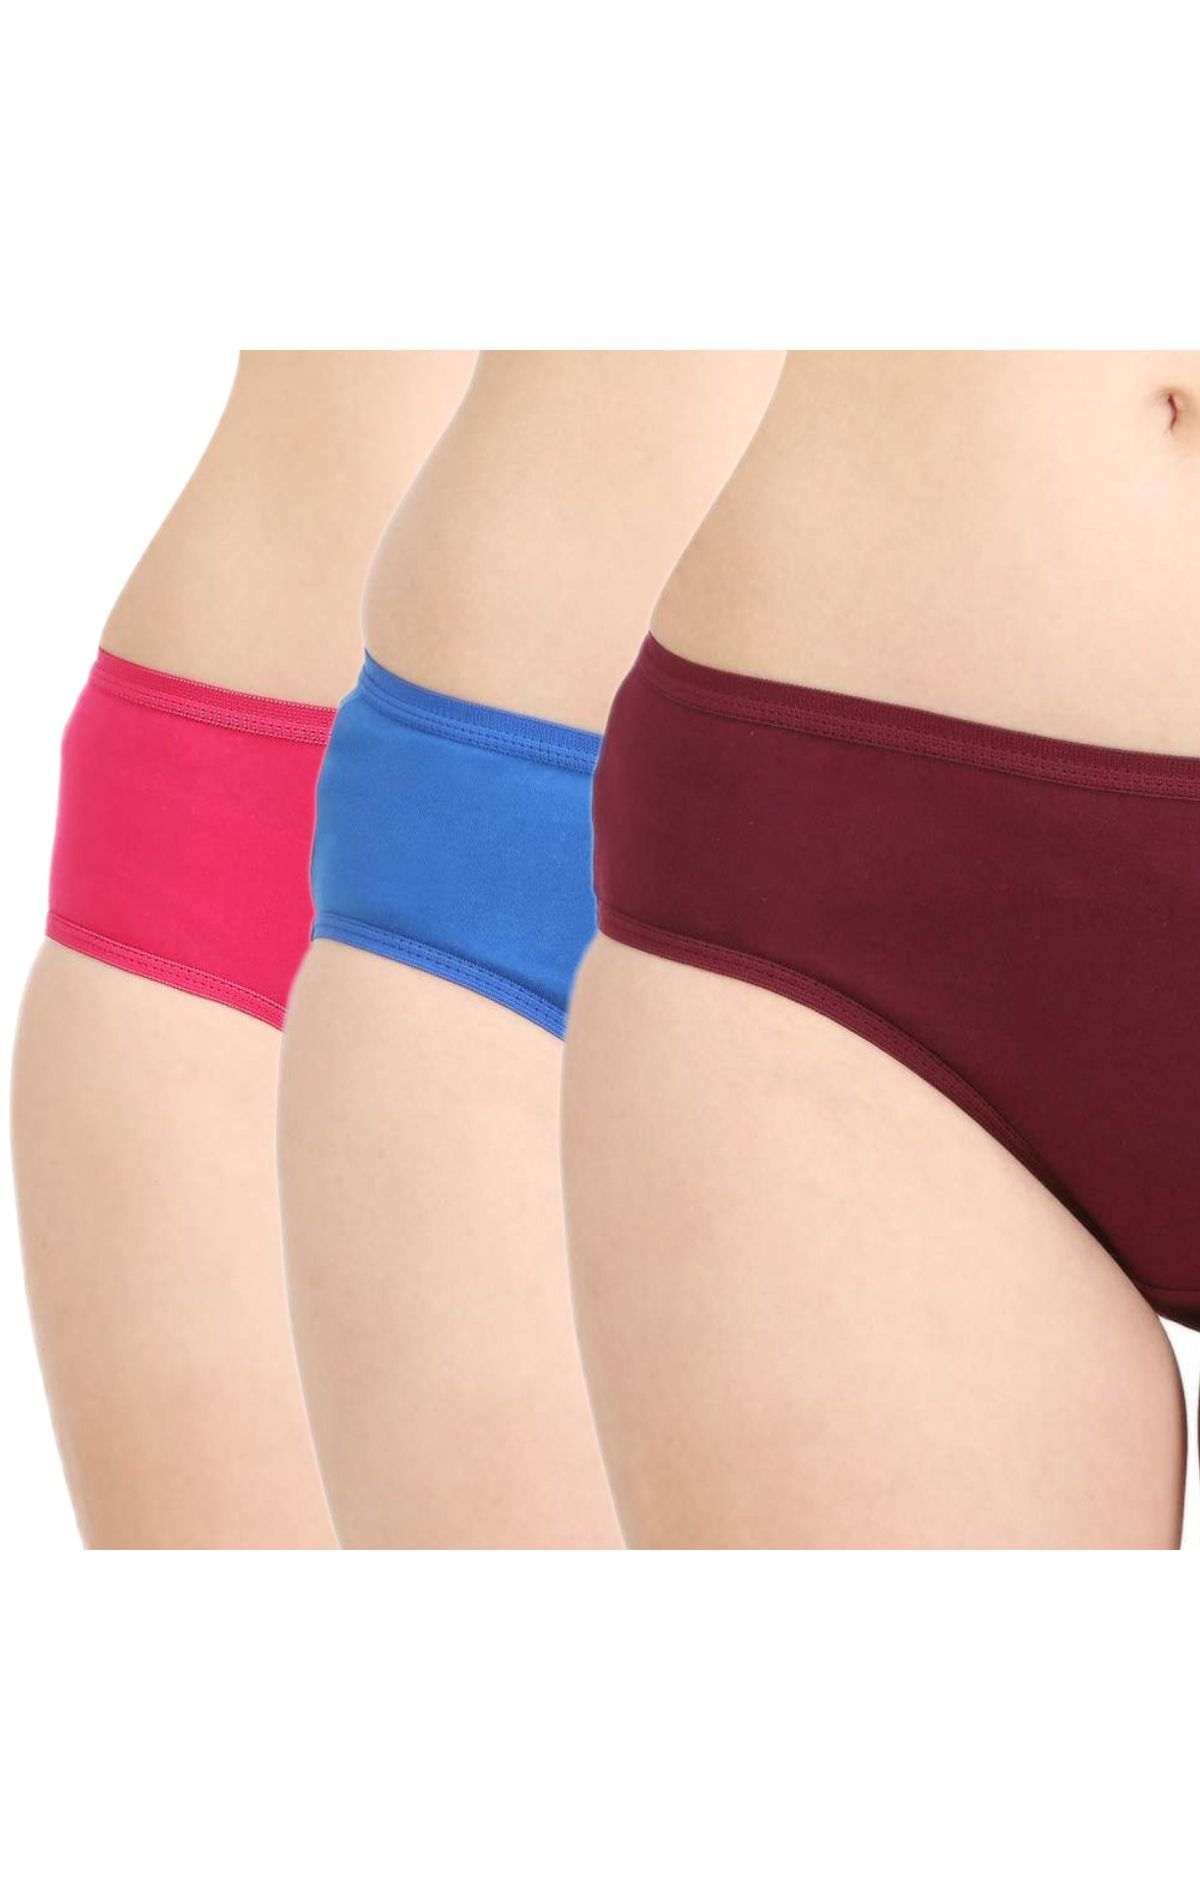 Buy Bodycare Women Cotton 6 pcs Panty Pack - Multi-Color 40000 online